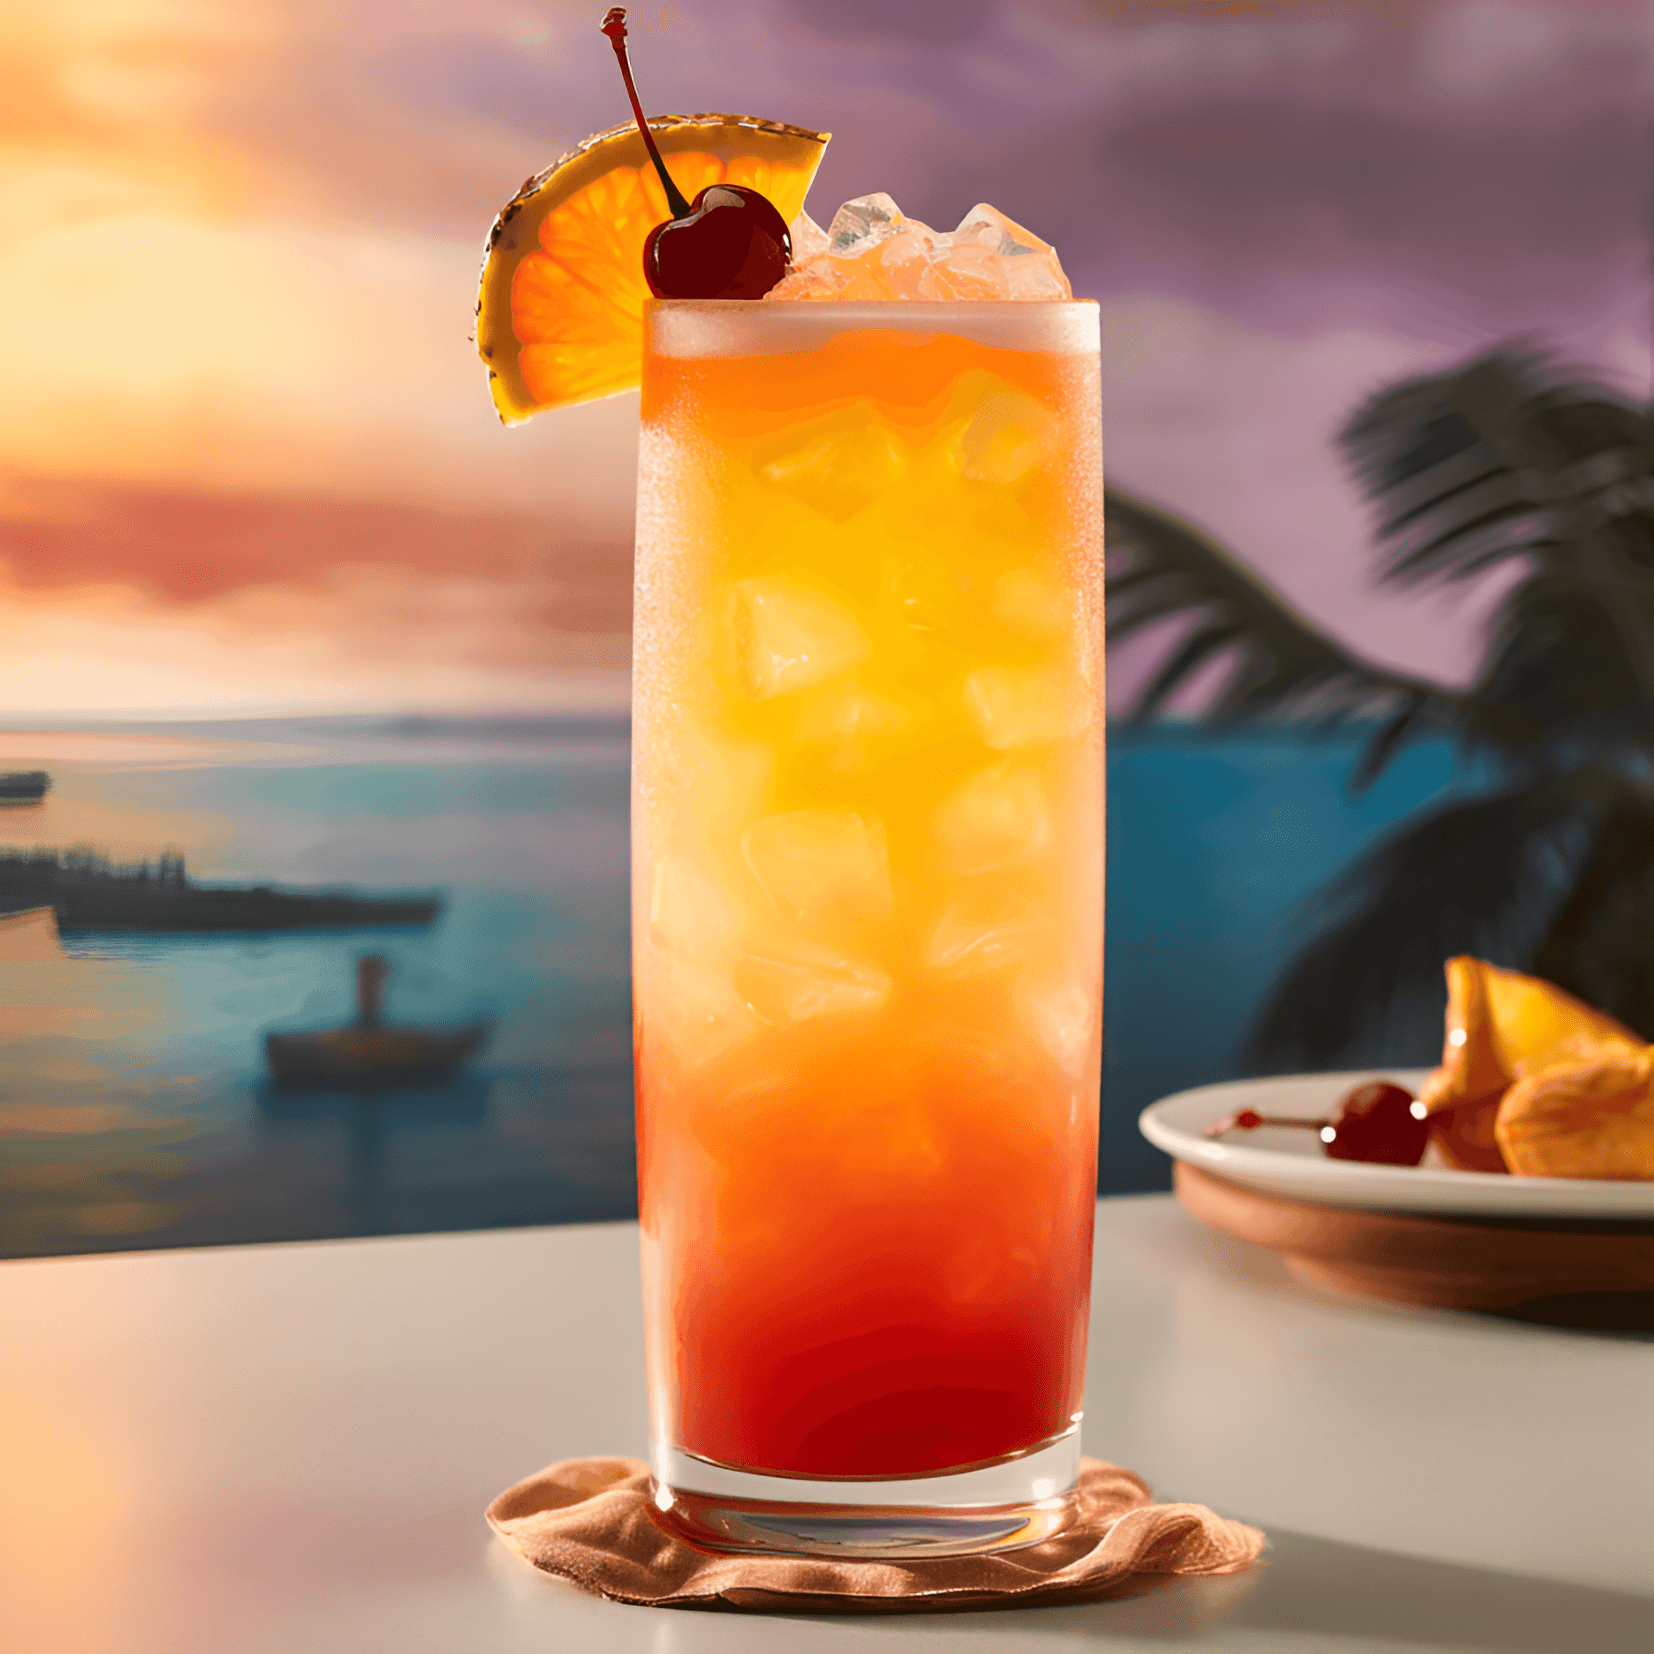 Island Affair Cóctel Receta - El cóctel Island Affair es una bebida dulce, afrutada y refrescante con un toque de acidez. La combinación de sabores tropicales crea un equilibrio armonioso que es tanto vigorizante como satisfactorio.